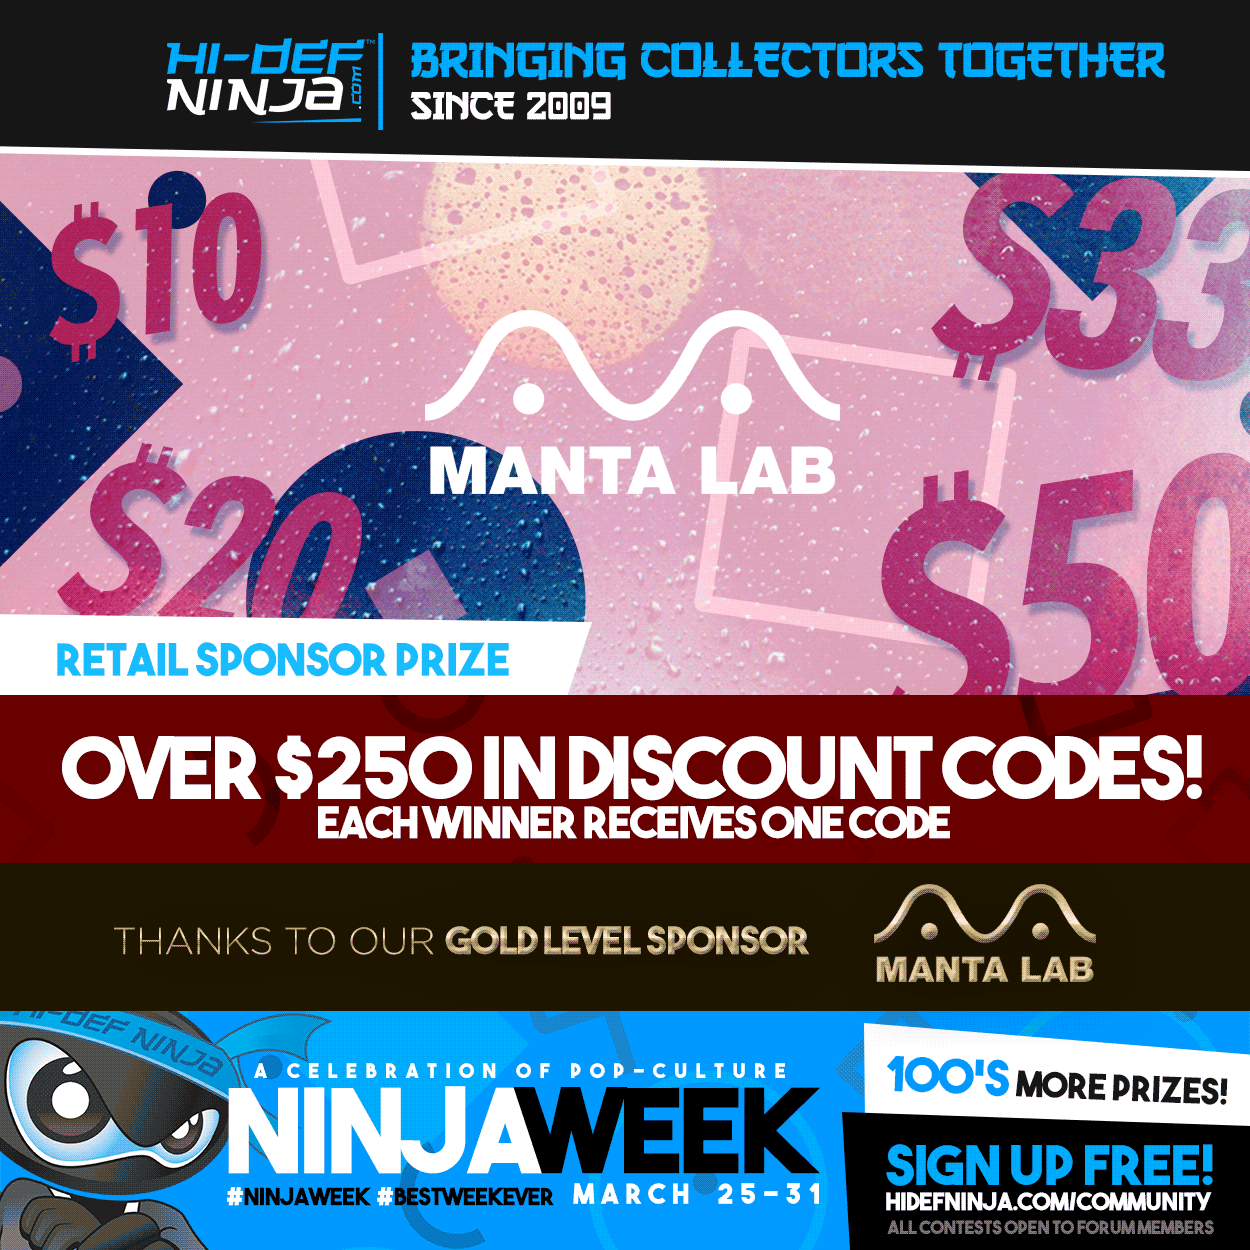 mantalab-250-codes-social-ninja-week-2019.png